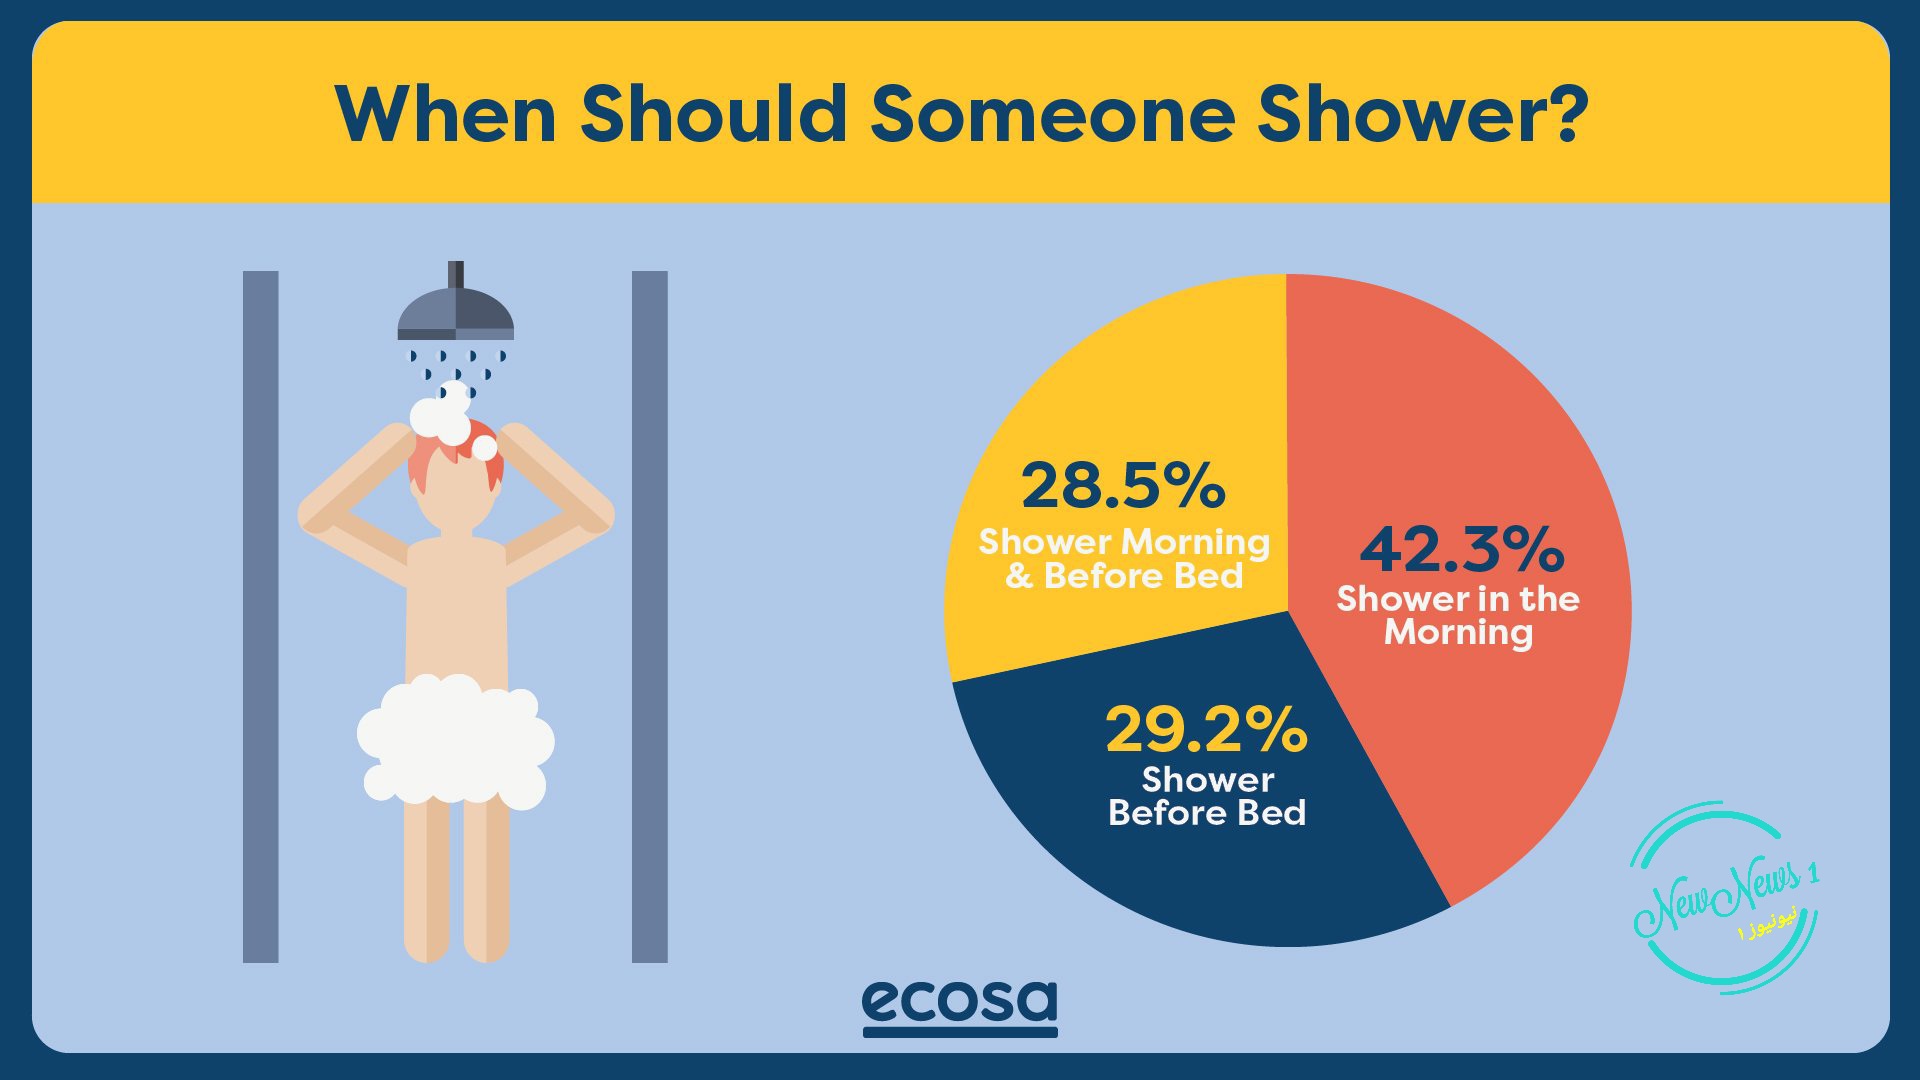 حمام کردن قبل از خواب با آب سرد بهتر است یا آب گرم؟ 